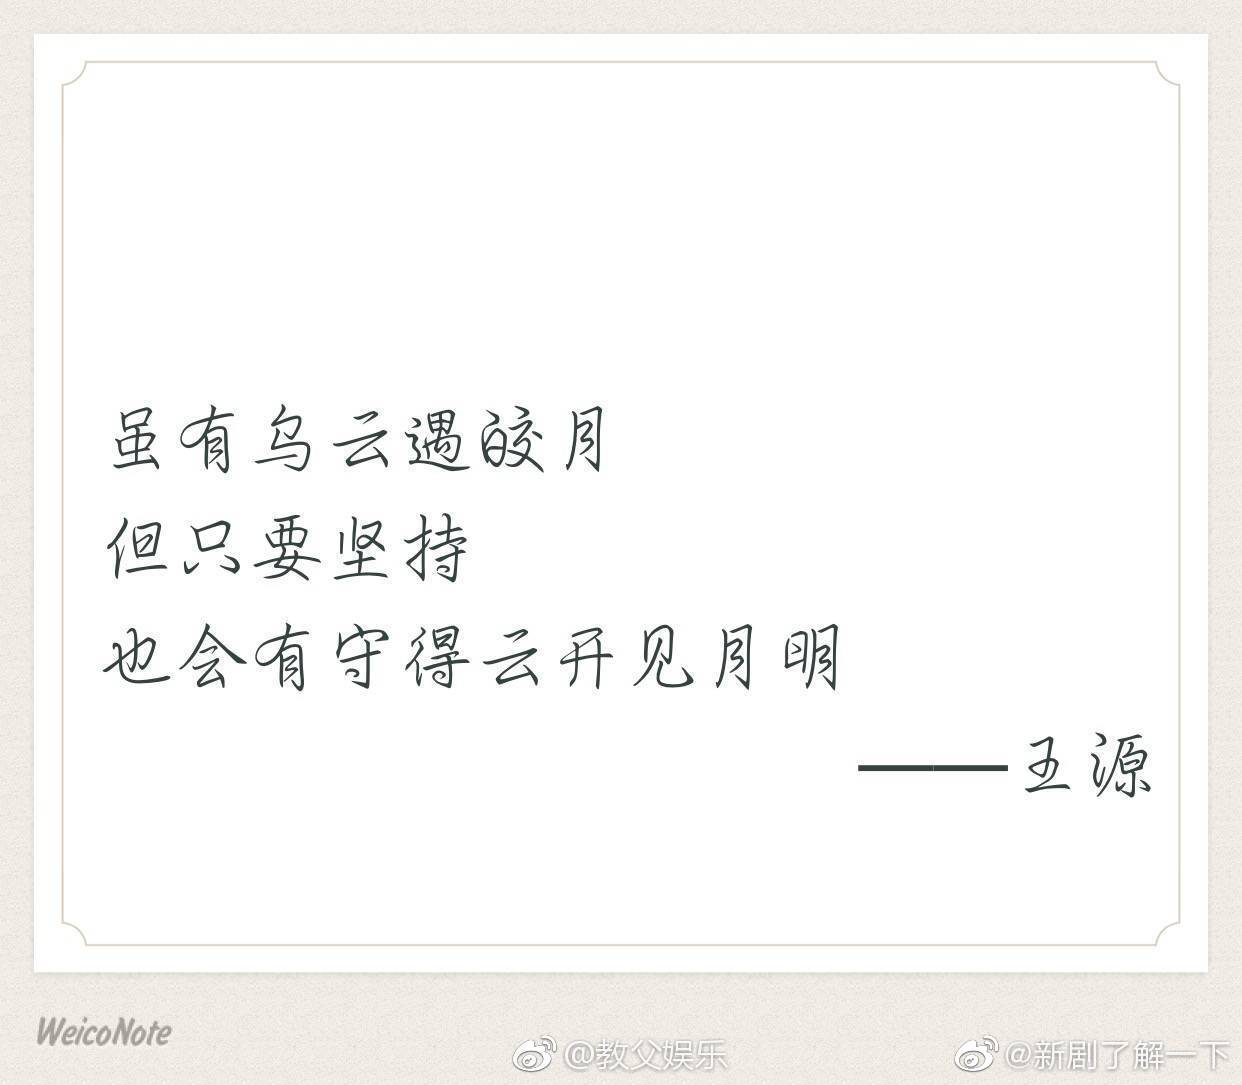 王源新闻190524文采飞扬的王源文字装着他的阅历